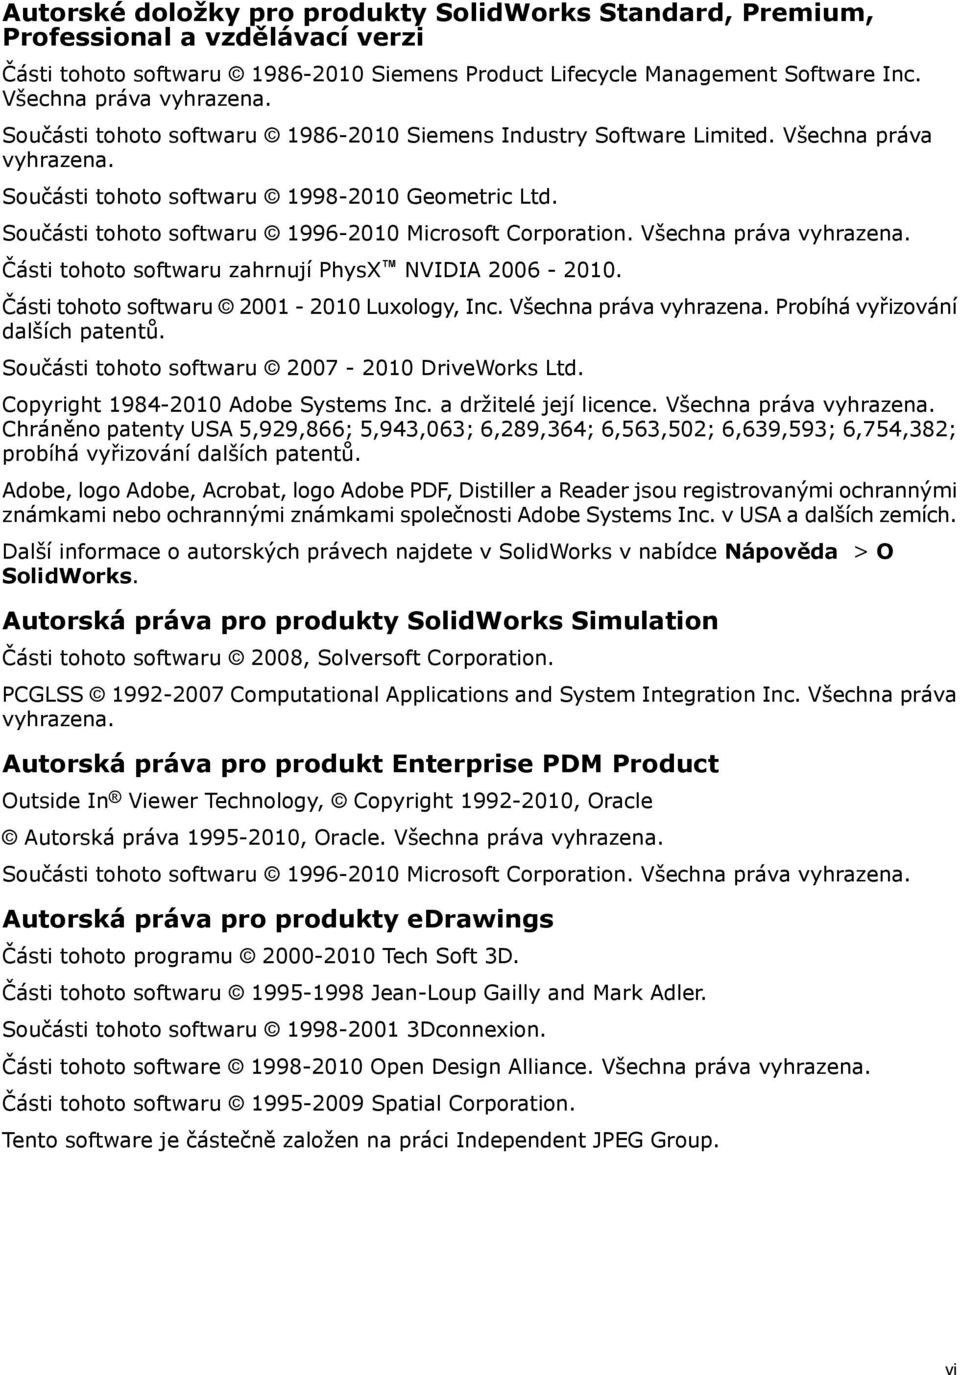 Součásti tohoto softwaru 1996-2010 Microsoft Corporation. Všechna práva vyhrazena. Části tohoto softwaru zahrnují PhysX NVIDIA 2006-2010. Části tohoto softwaru 2001-2010 Luxology, Inc.